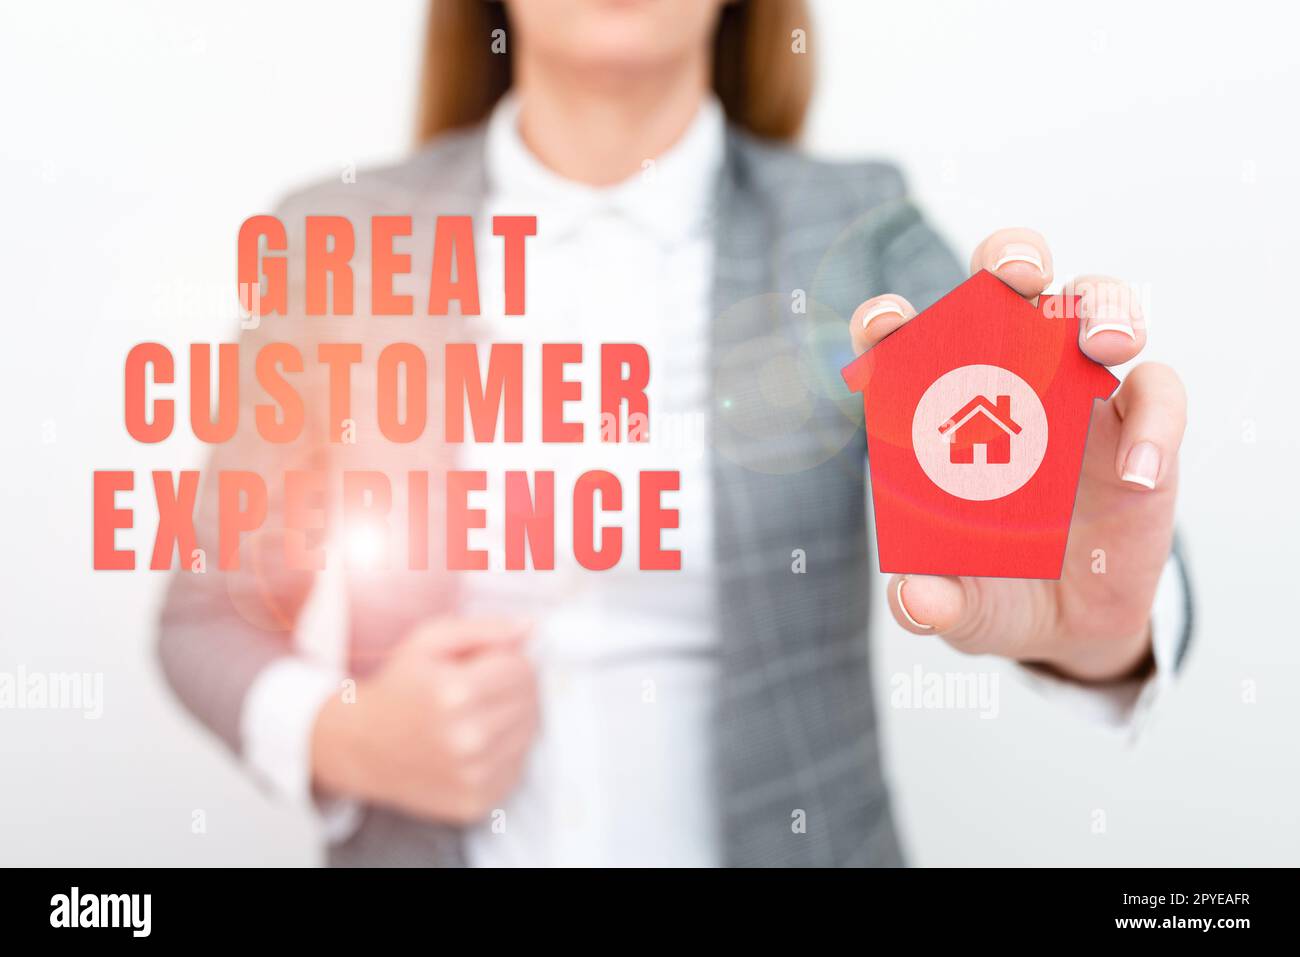 Handgeschriebener Text Great Customer Experience (herausragende Kundenerfahrung). Konzeptfotos, die Kunden freundlich und hilfsbereit antworten Stockfoto